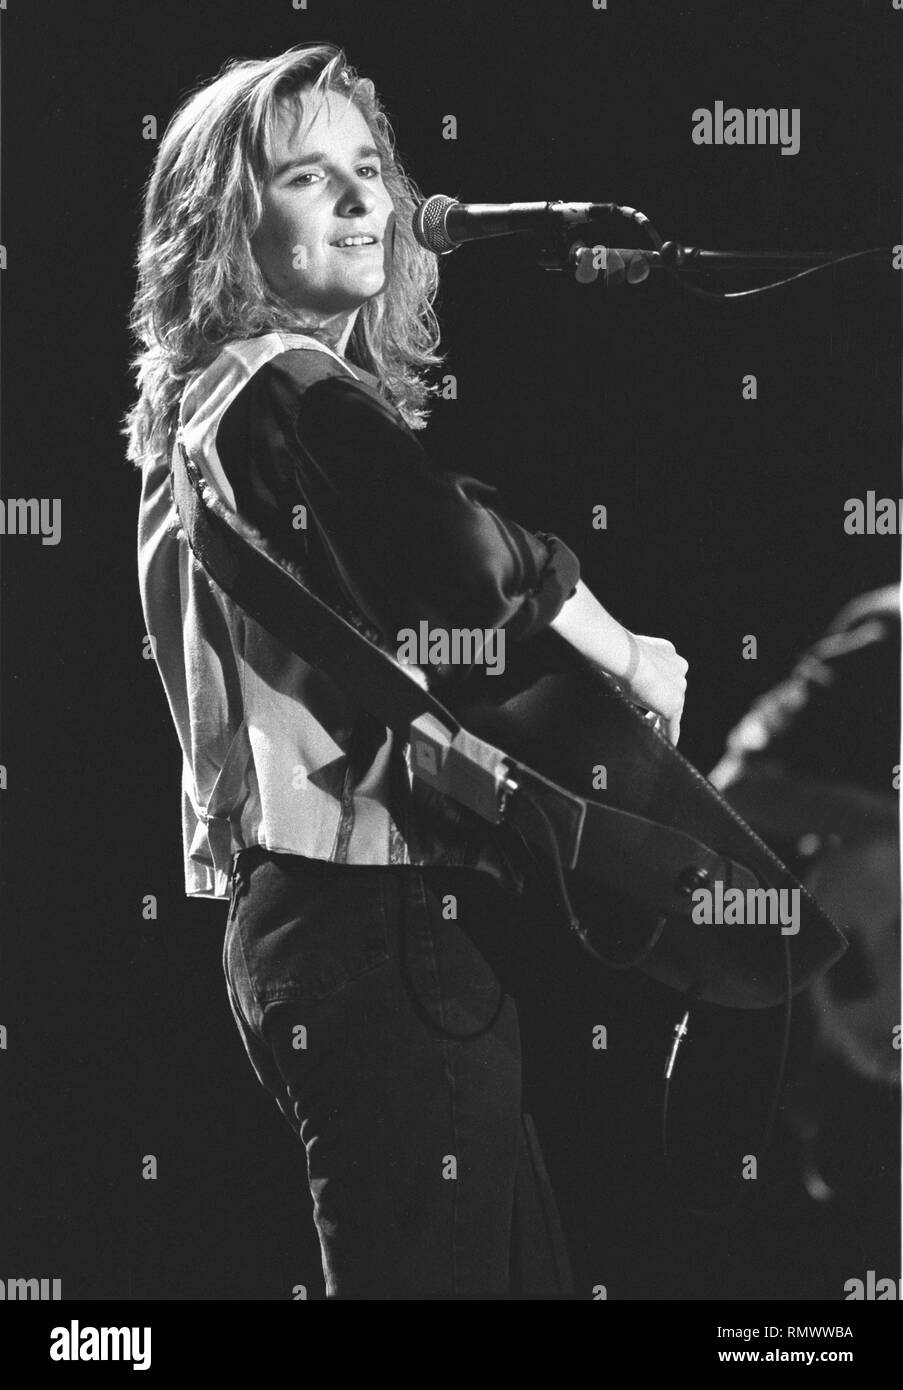 Musicista Melissa Etheridge è mostrato esibirsi sul palco durante un 'live' aspetto di concerto. Foto Stock